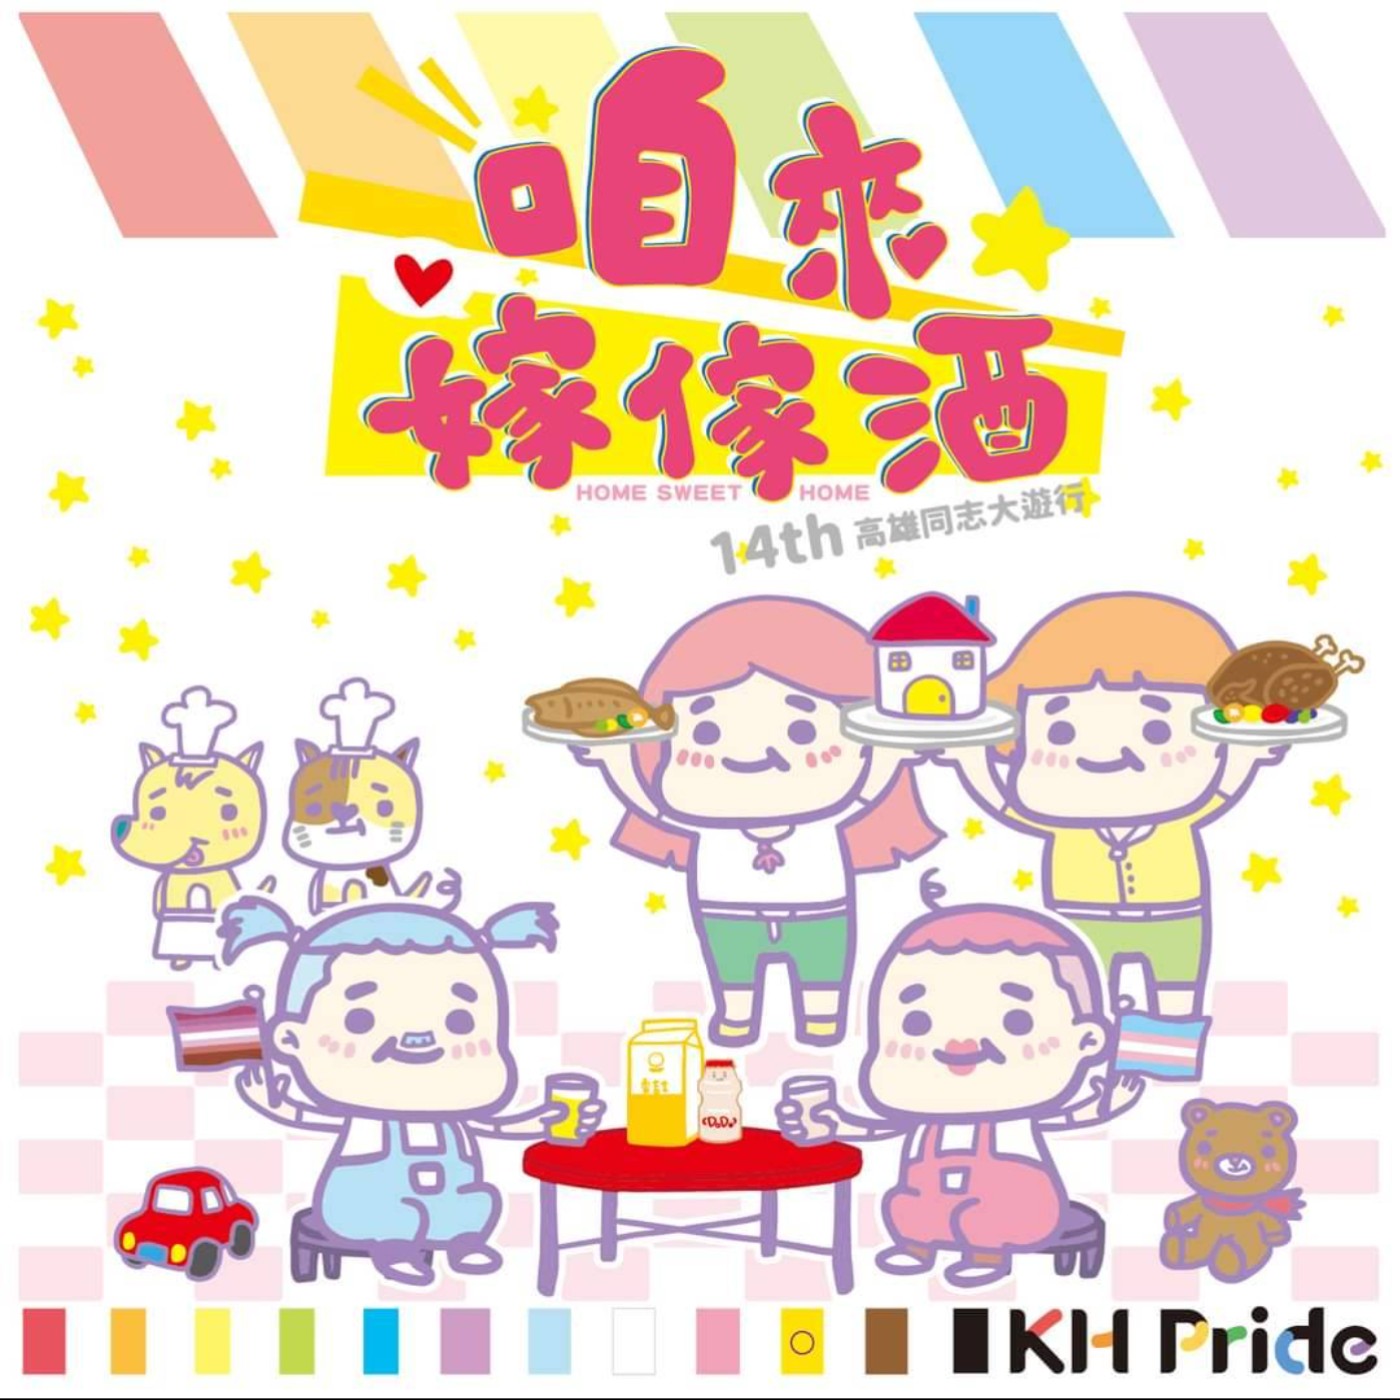 #124 被選召的孩子們 feat. 高雄同志大遊行 KH Pride